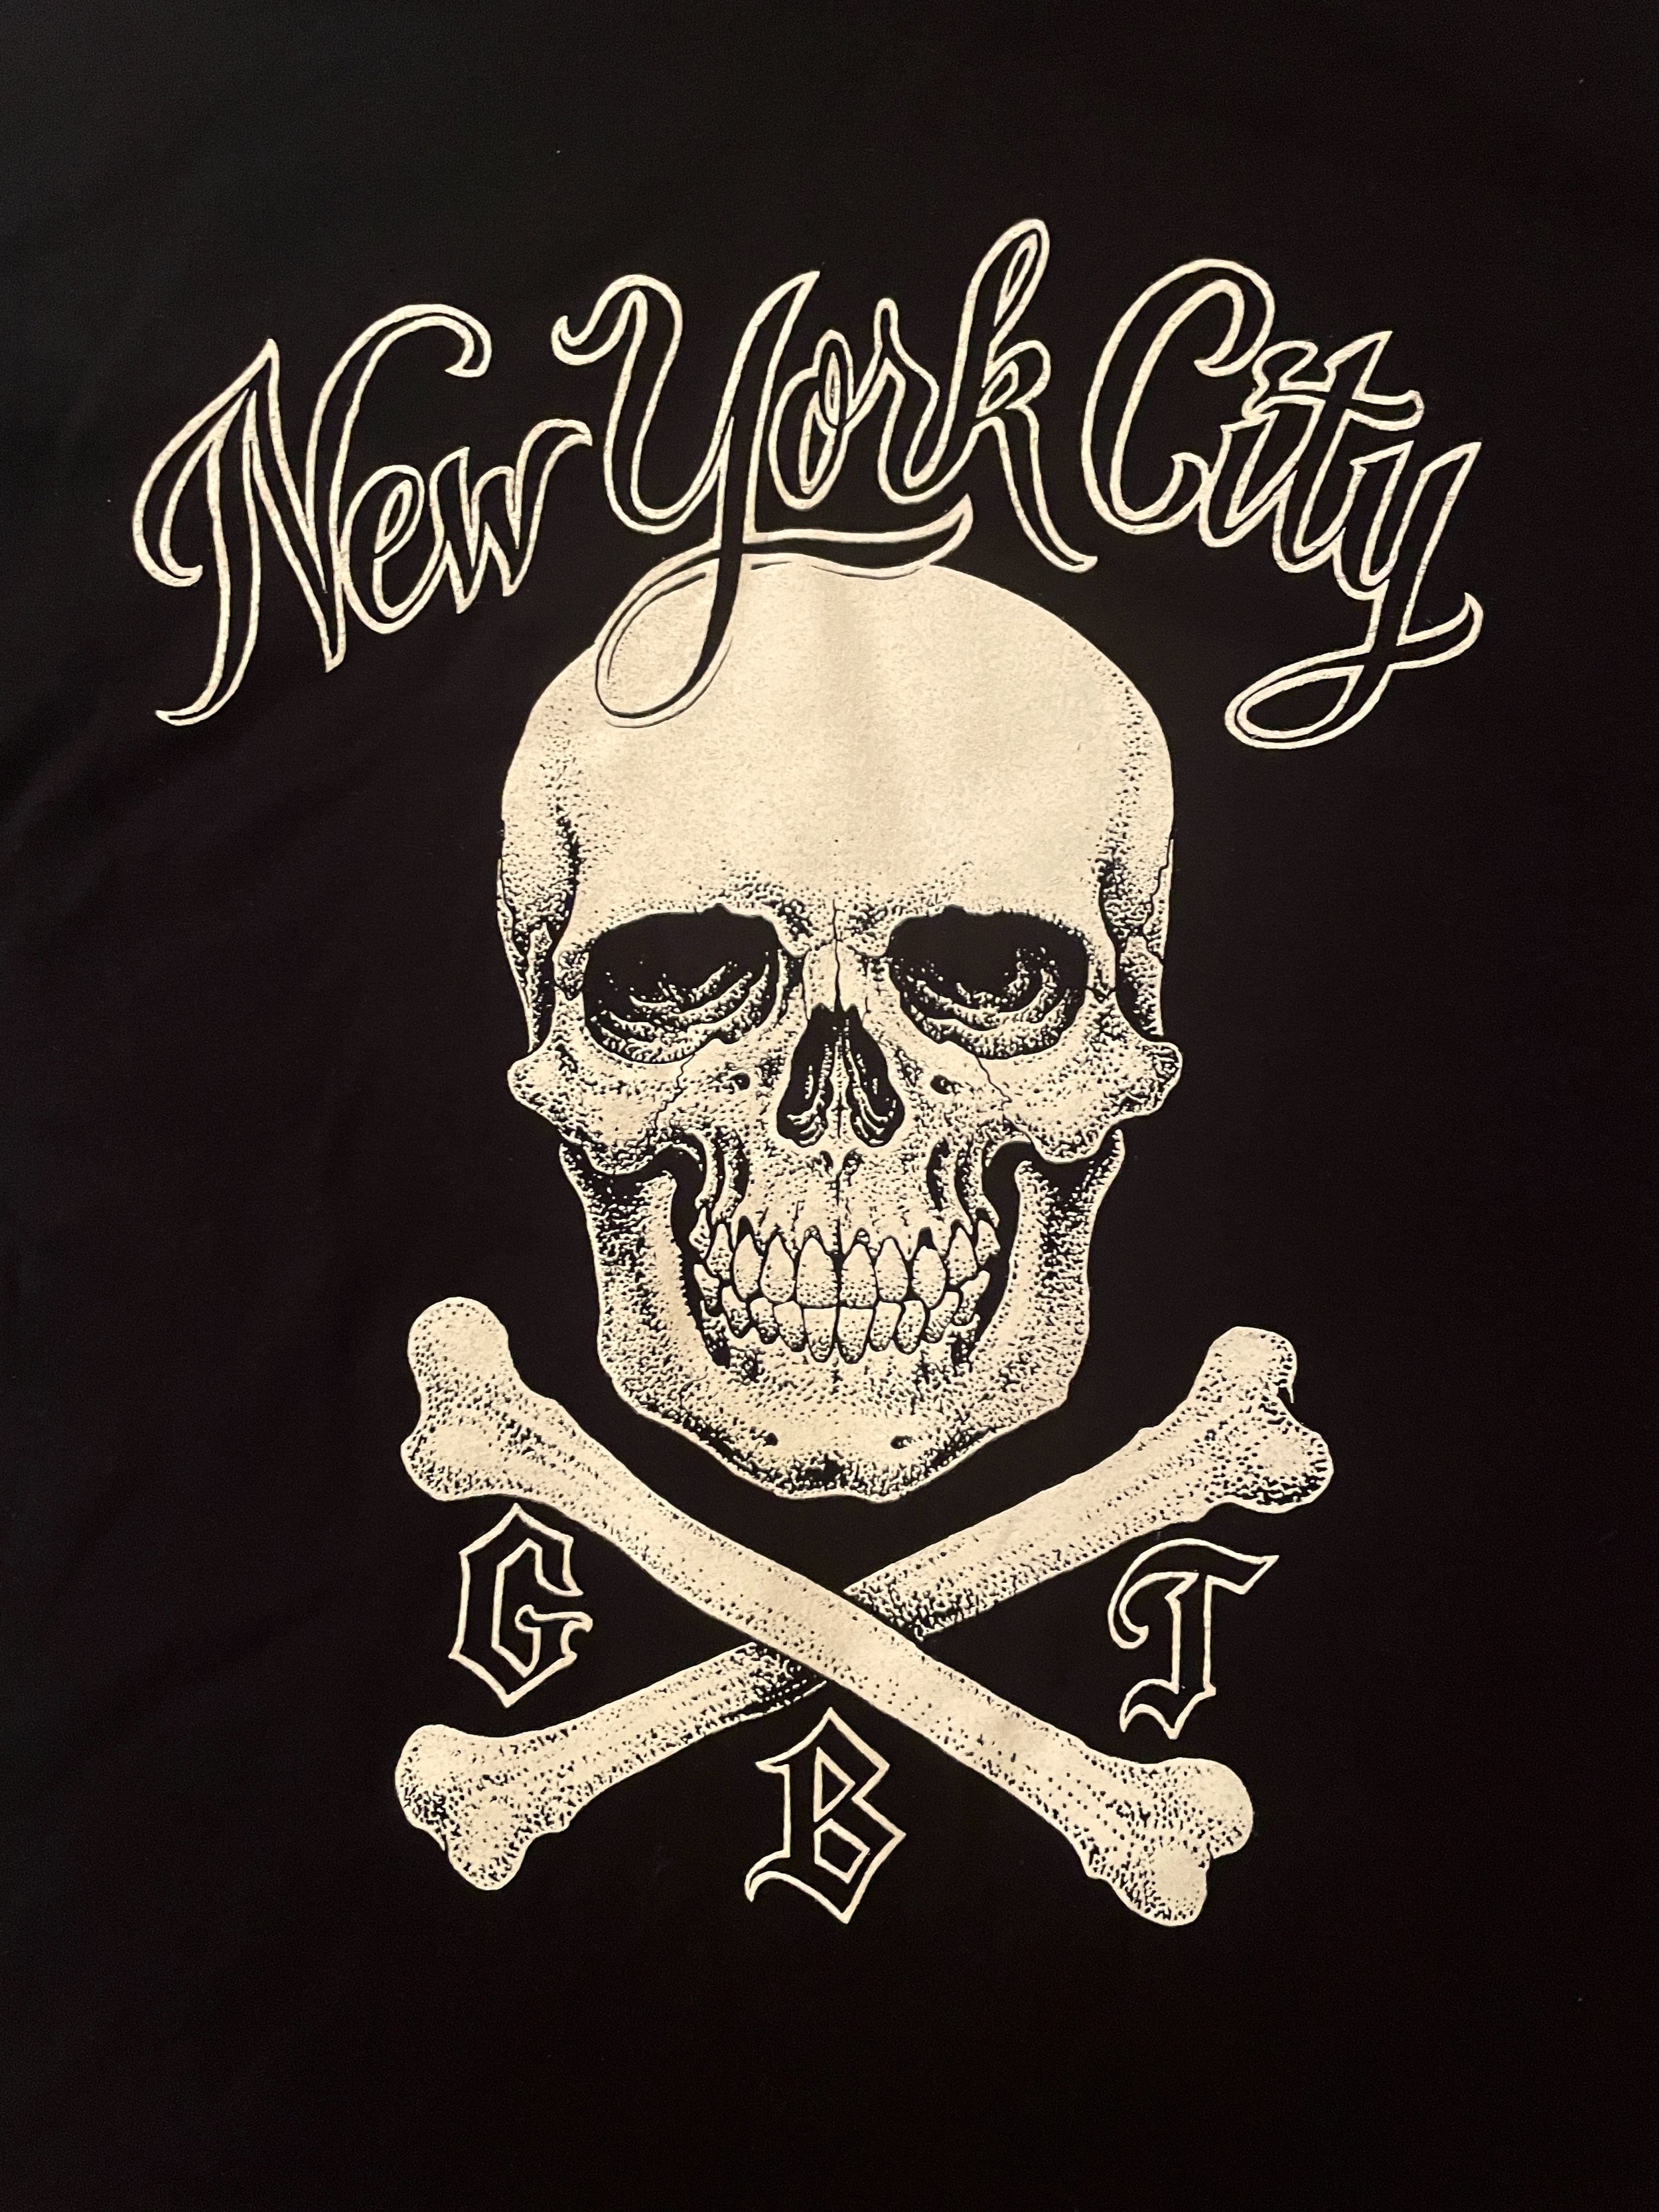 Fifth Sun Skull Cross Skeleton Graphic Gray Tshirt Novelty Brand